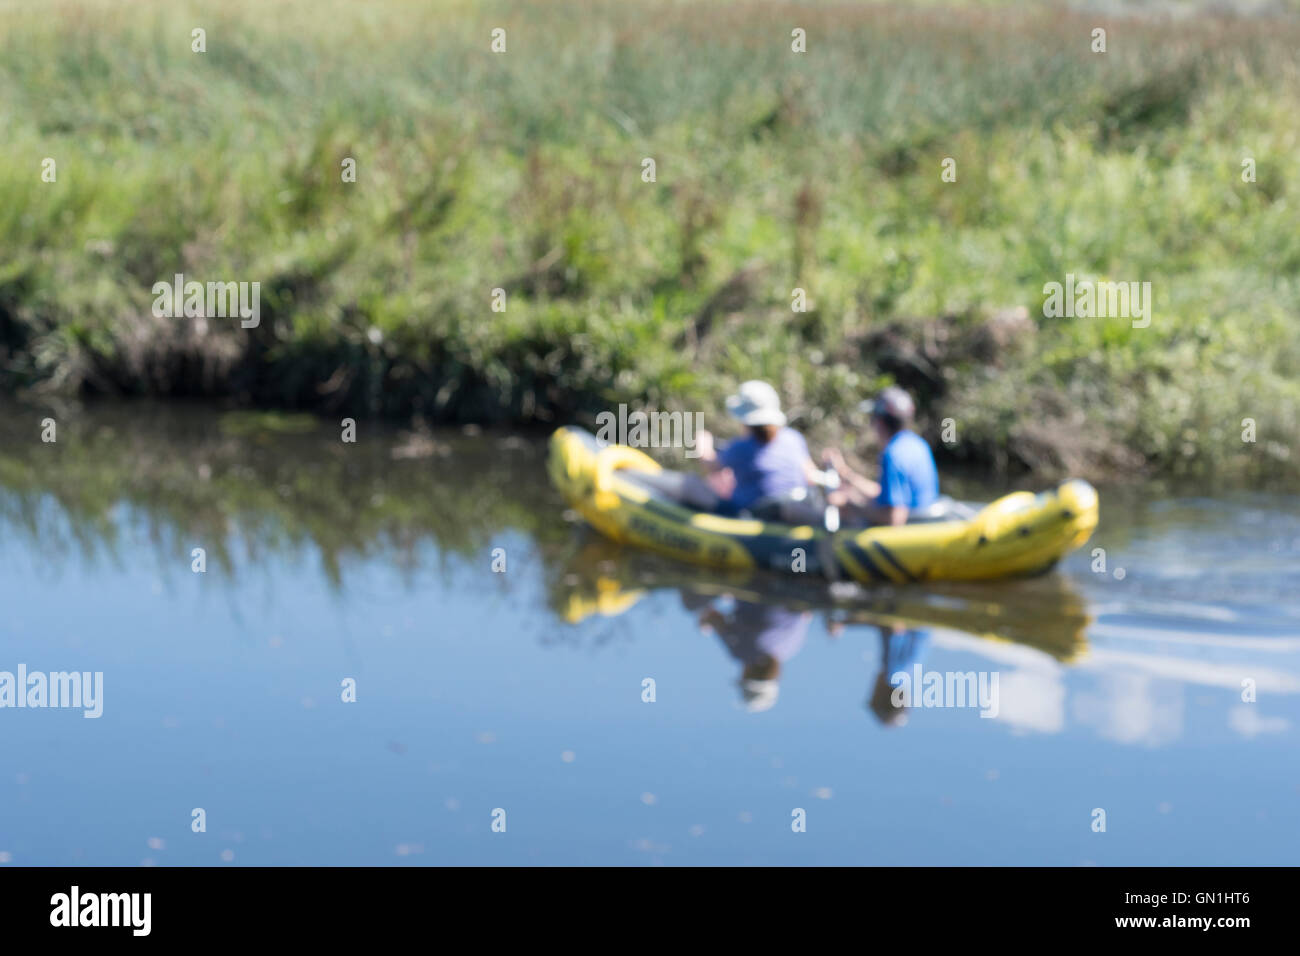 Verschwommen weiches Bild von zwei Kanuten als visuelle Metapher für das Konzept der Freizeit / Outdoor-Aktivitäten und Freizeit. Stockfoto